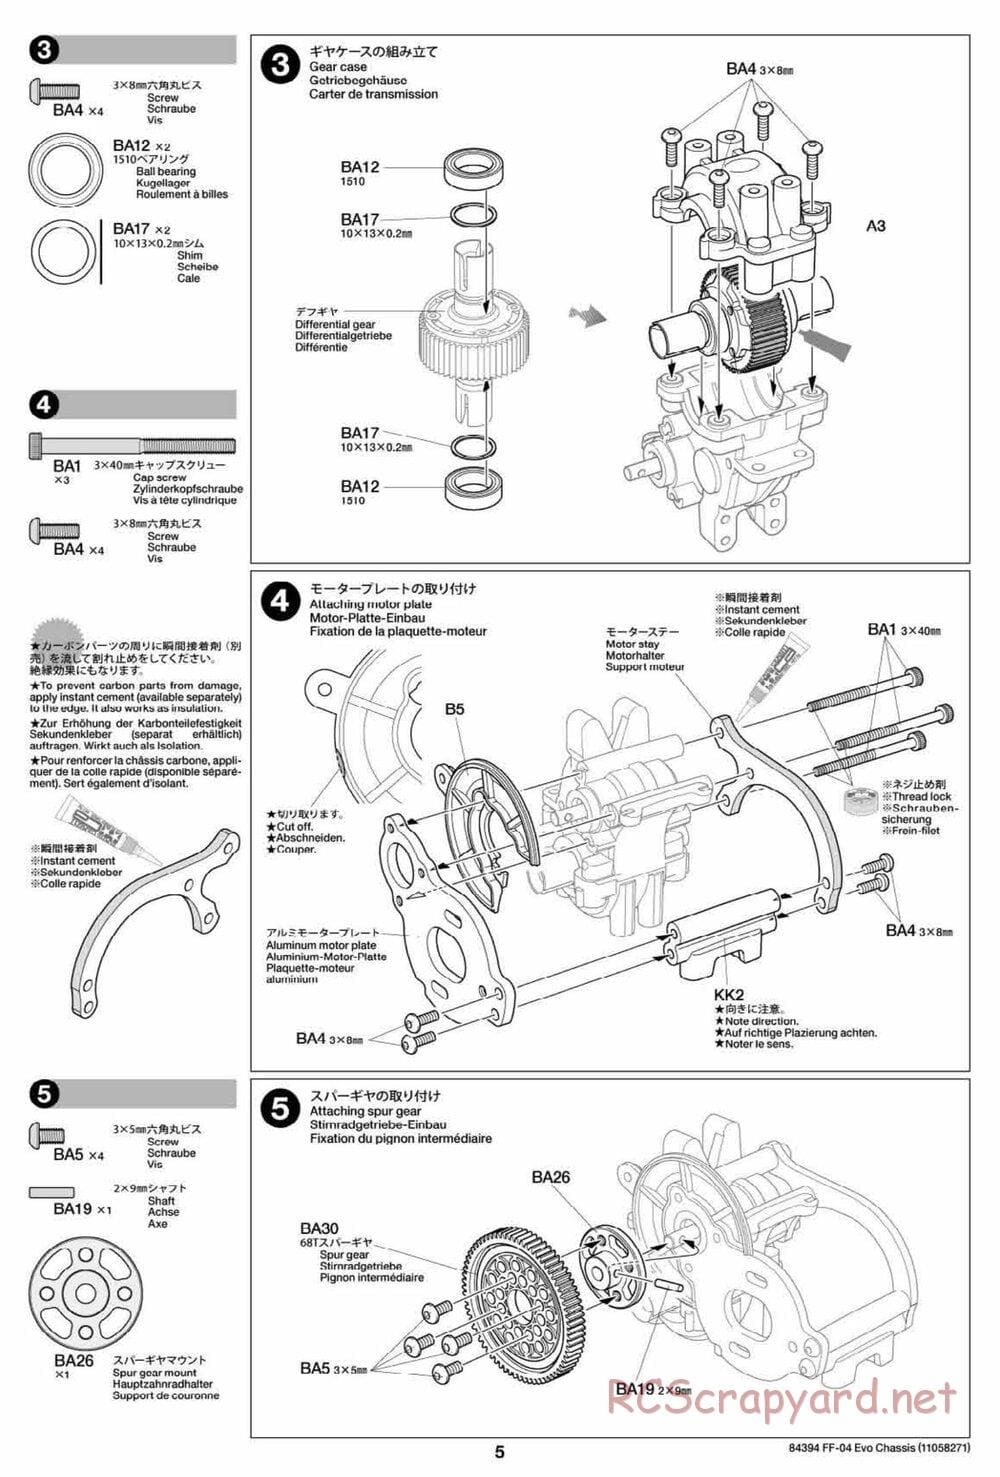 Tamiya - FF-04 Evo Chassis - Manual - Page 5